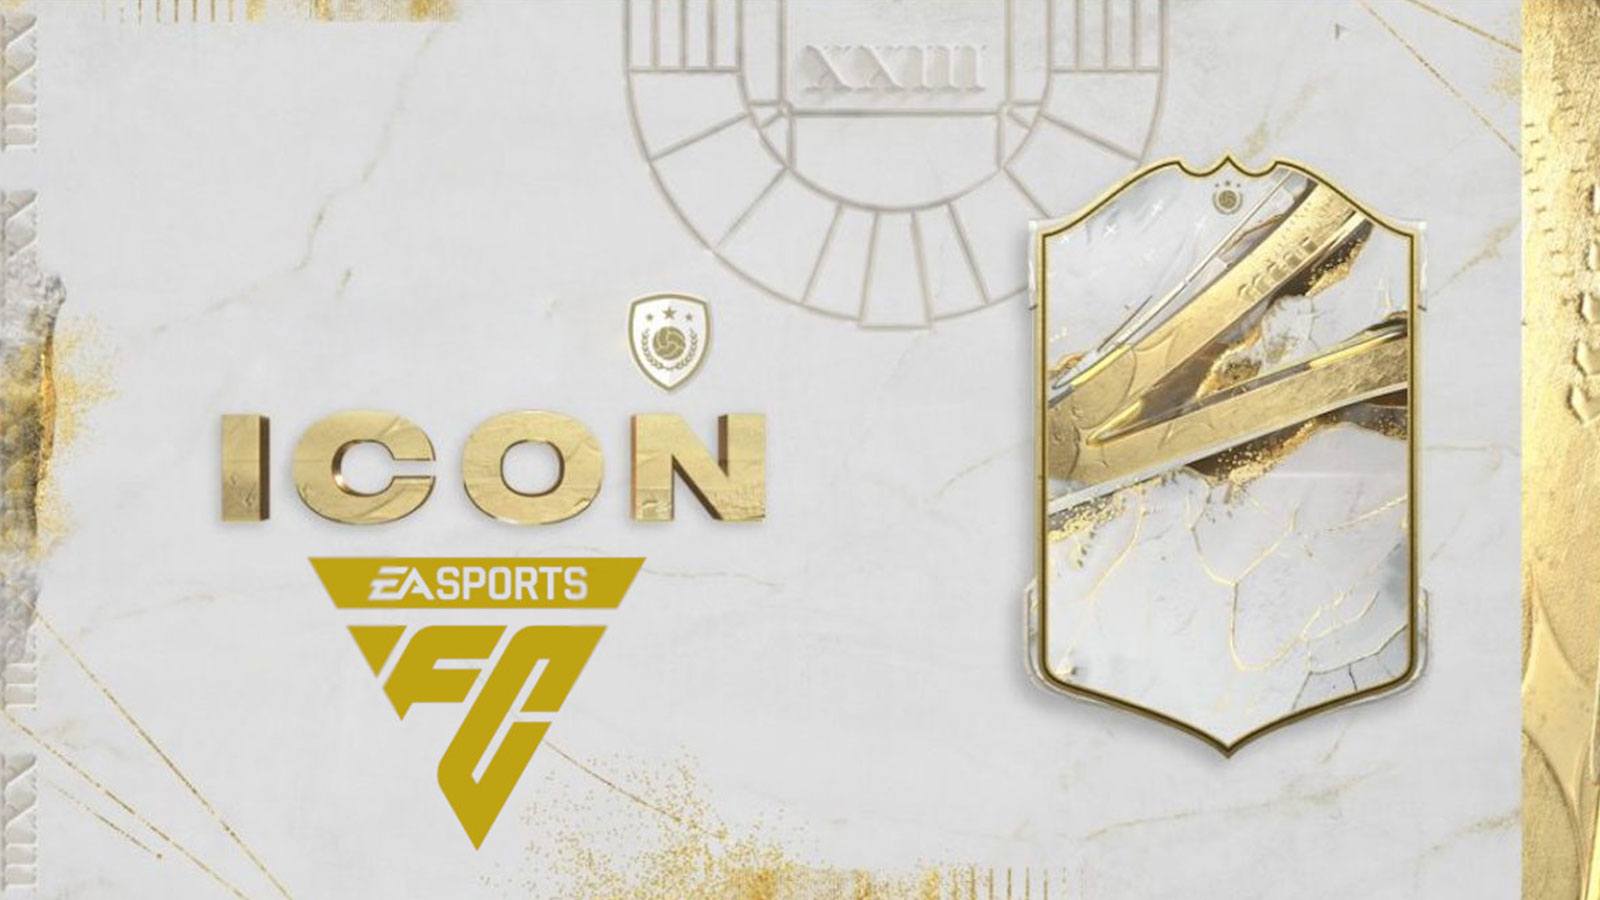 Cartes Icônes EA SPORTS FC